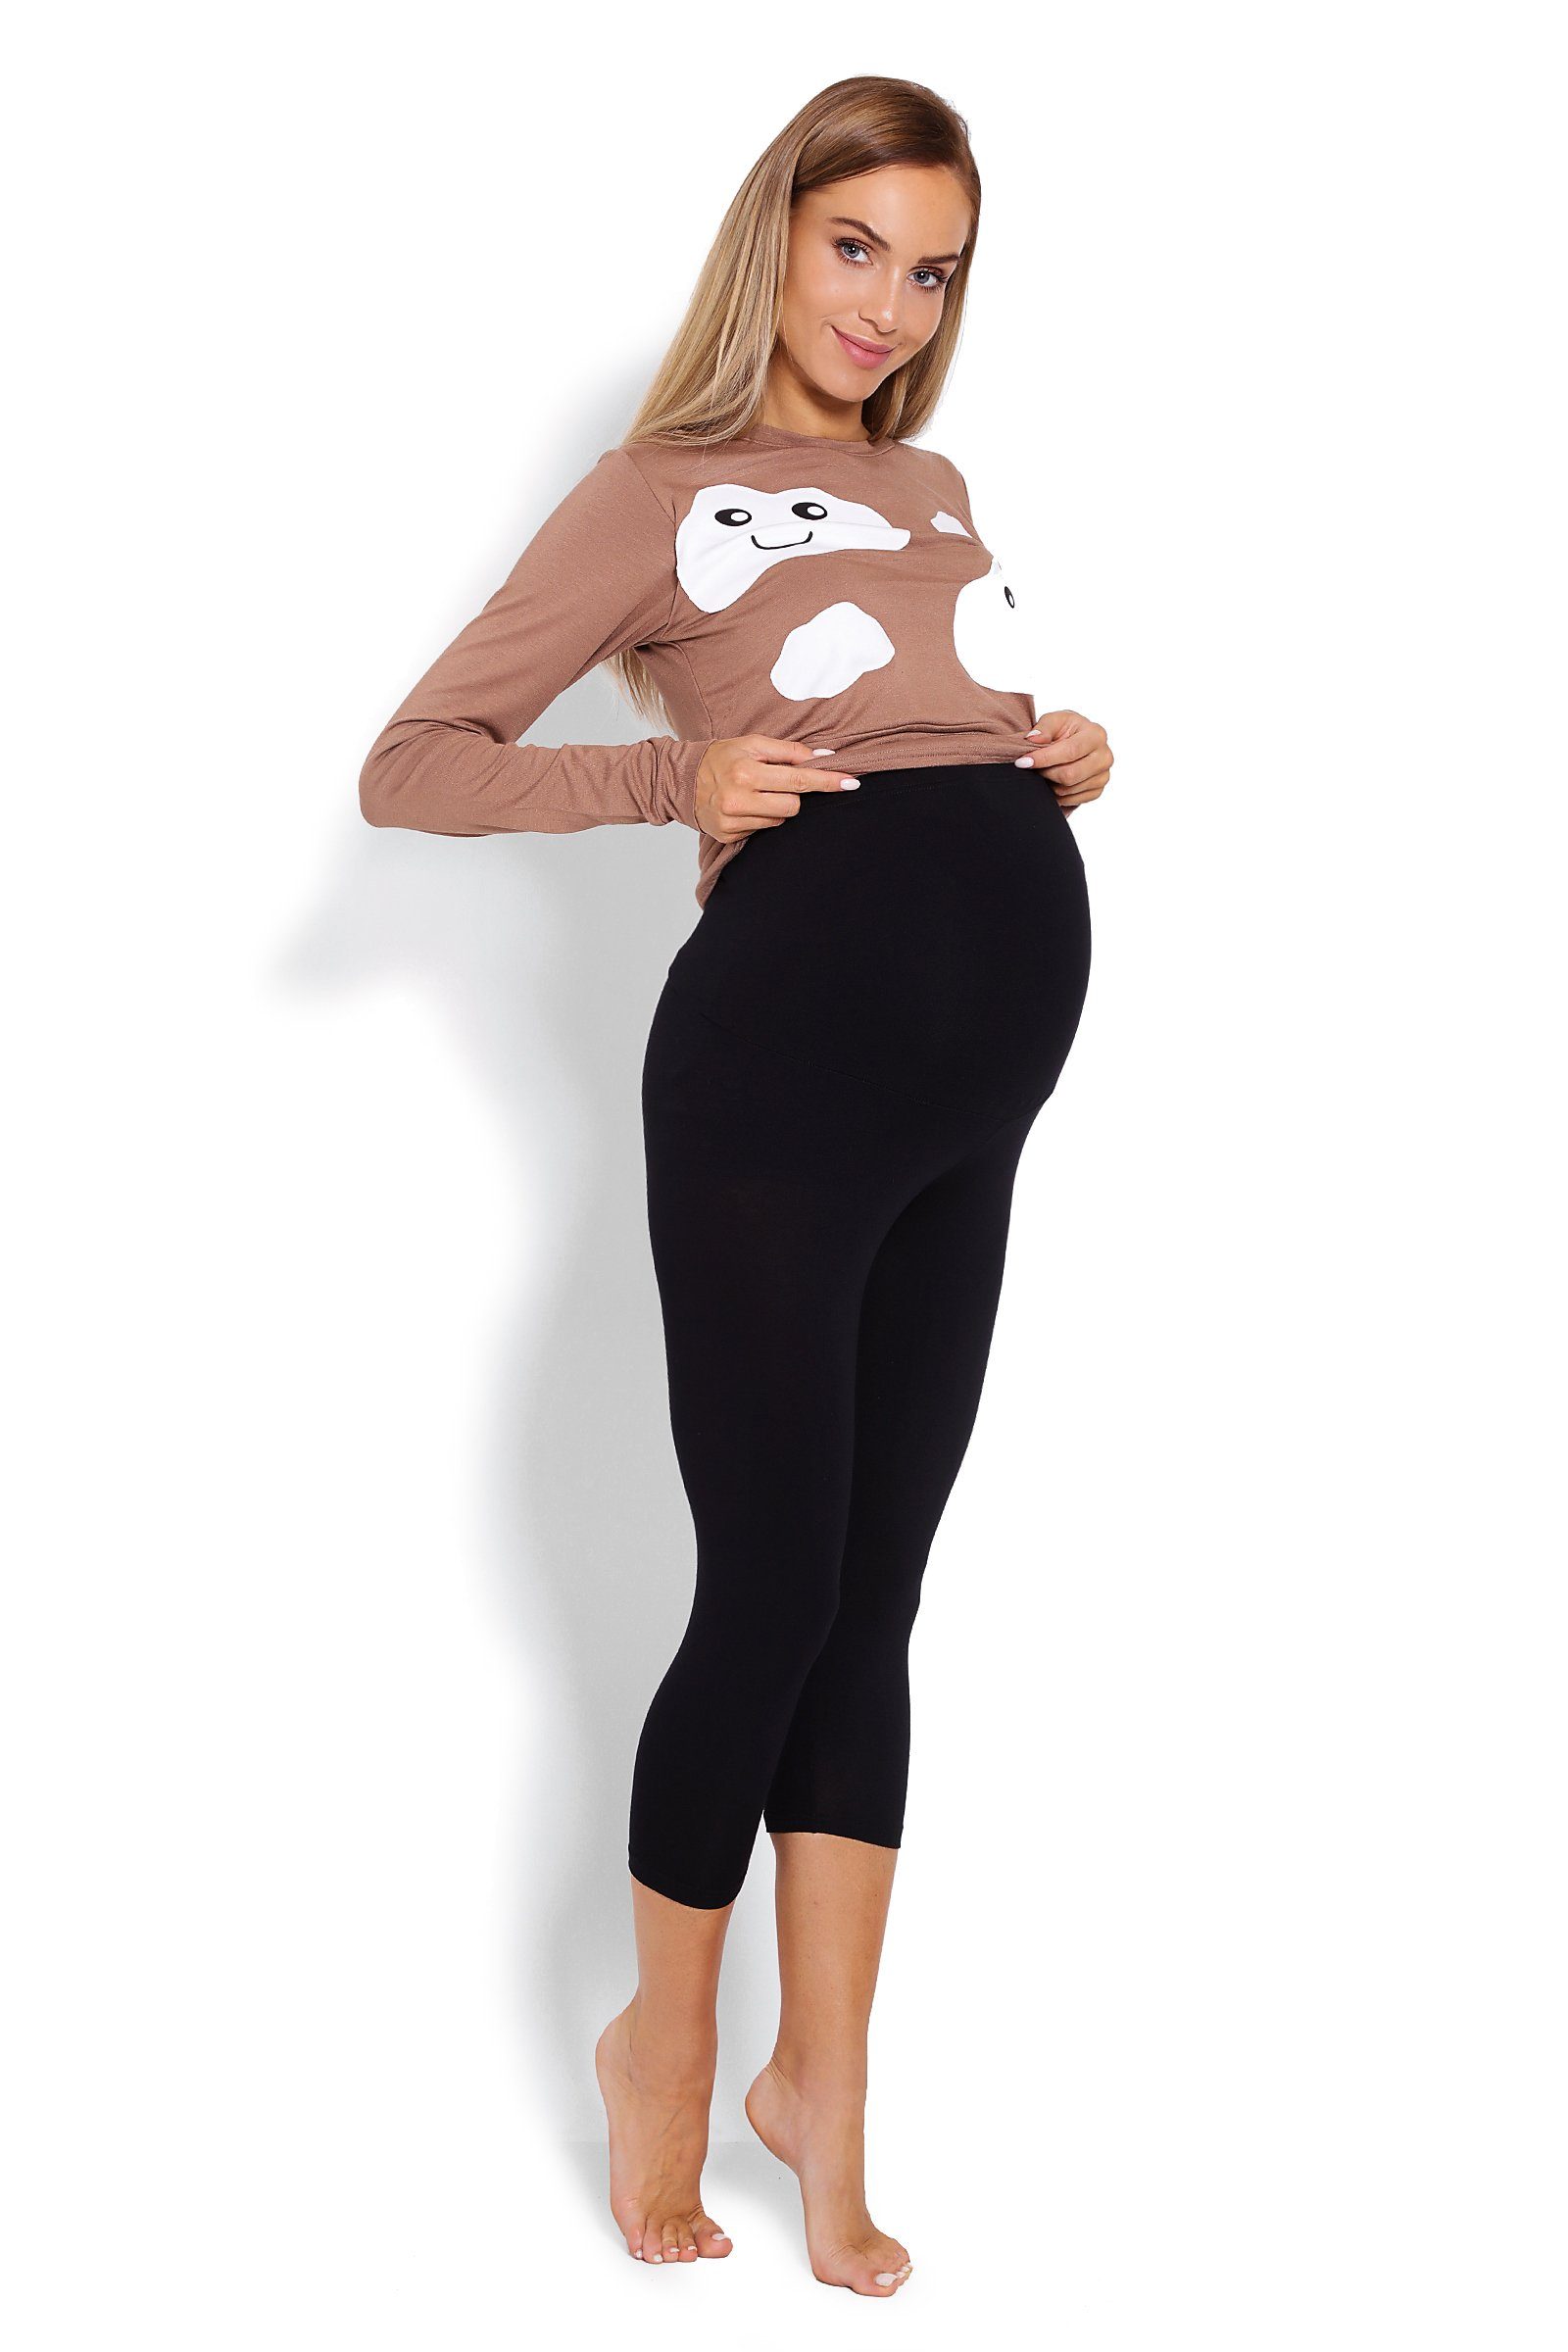 PeeKaBoo Umstandspyjama Schlafanzug Schwangerschaft braun/schwarz Stillschlafanzug Stillen